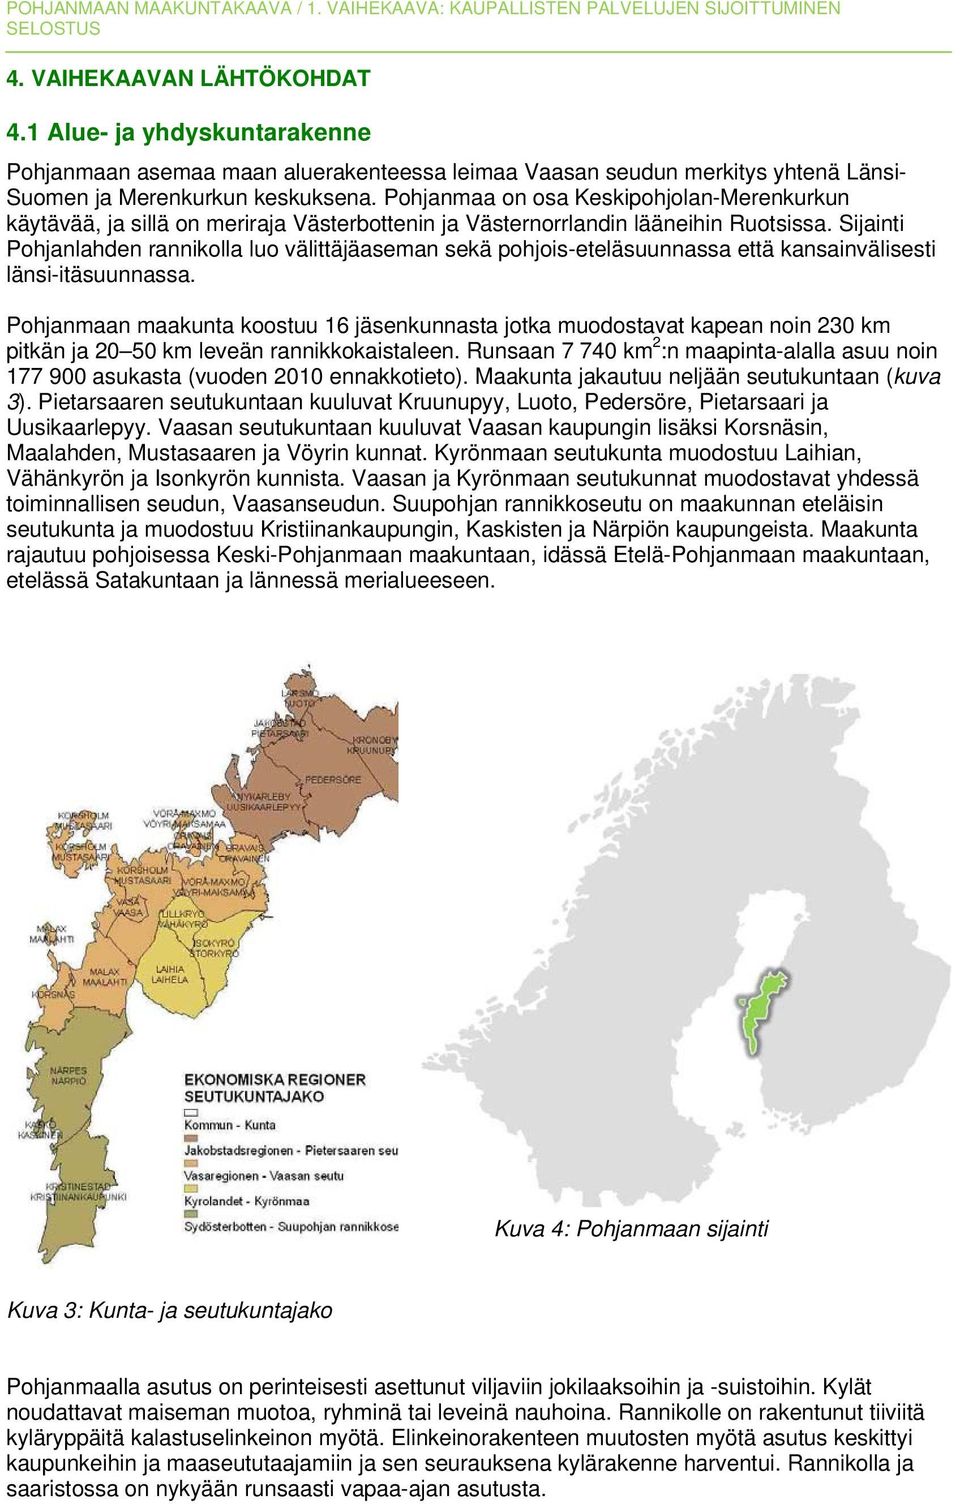 Sijainti Pohjanlahden rannikolla luo välittäjäaseman sekä pohjois-eteläsuunnassa että kansainvälisesti länsi-itäsuunnassa.